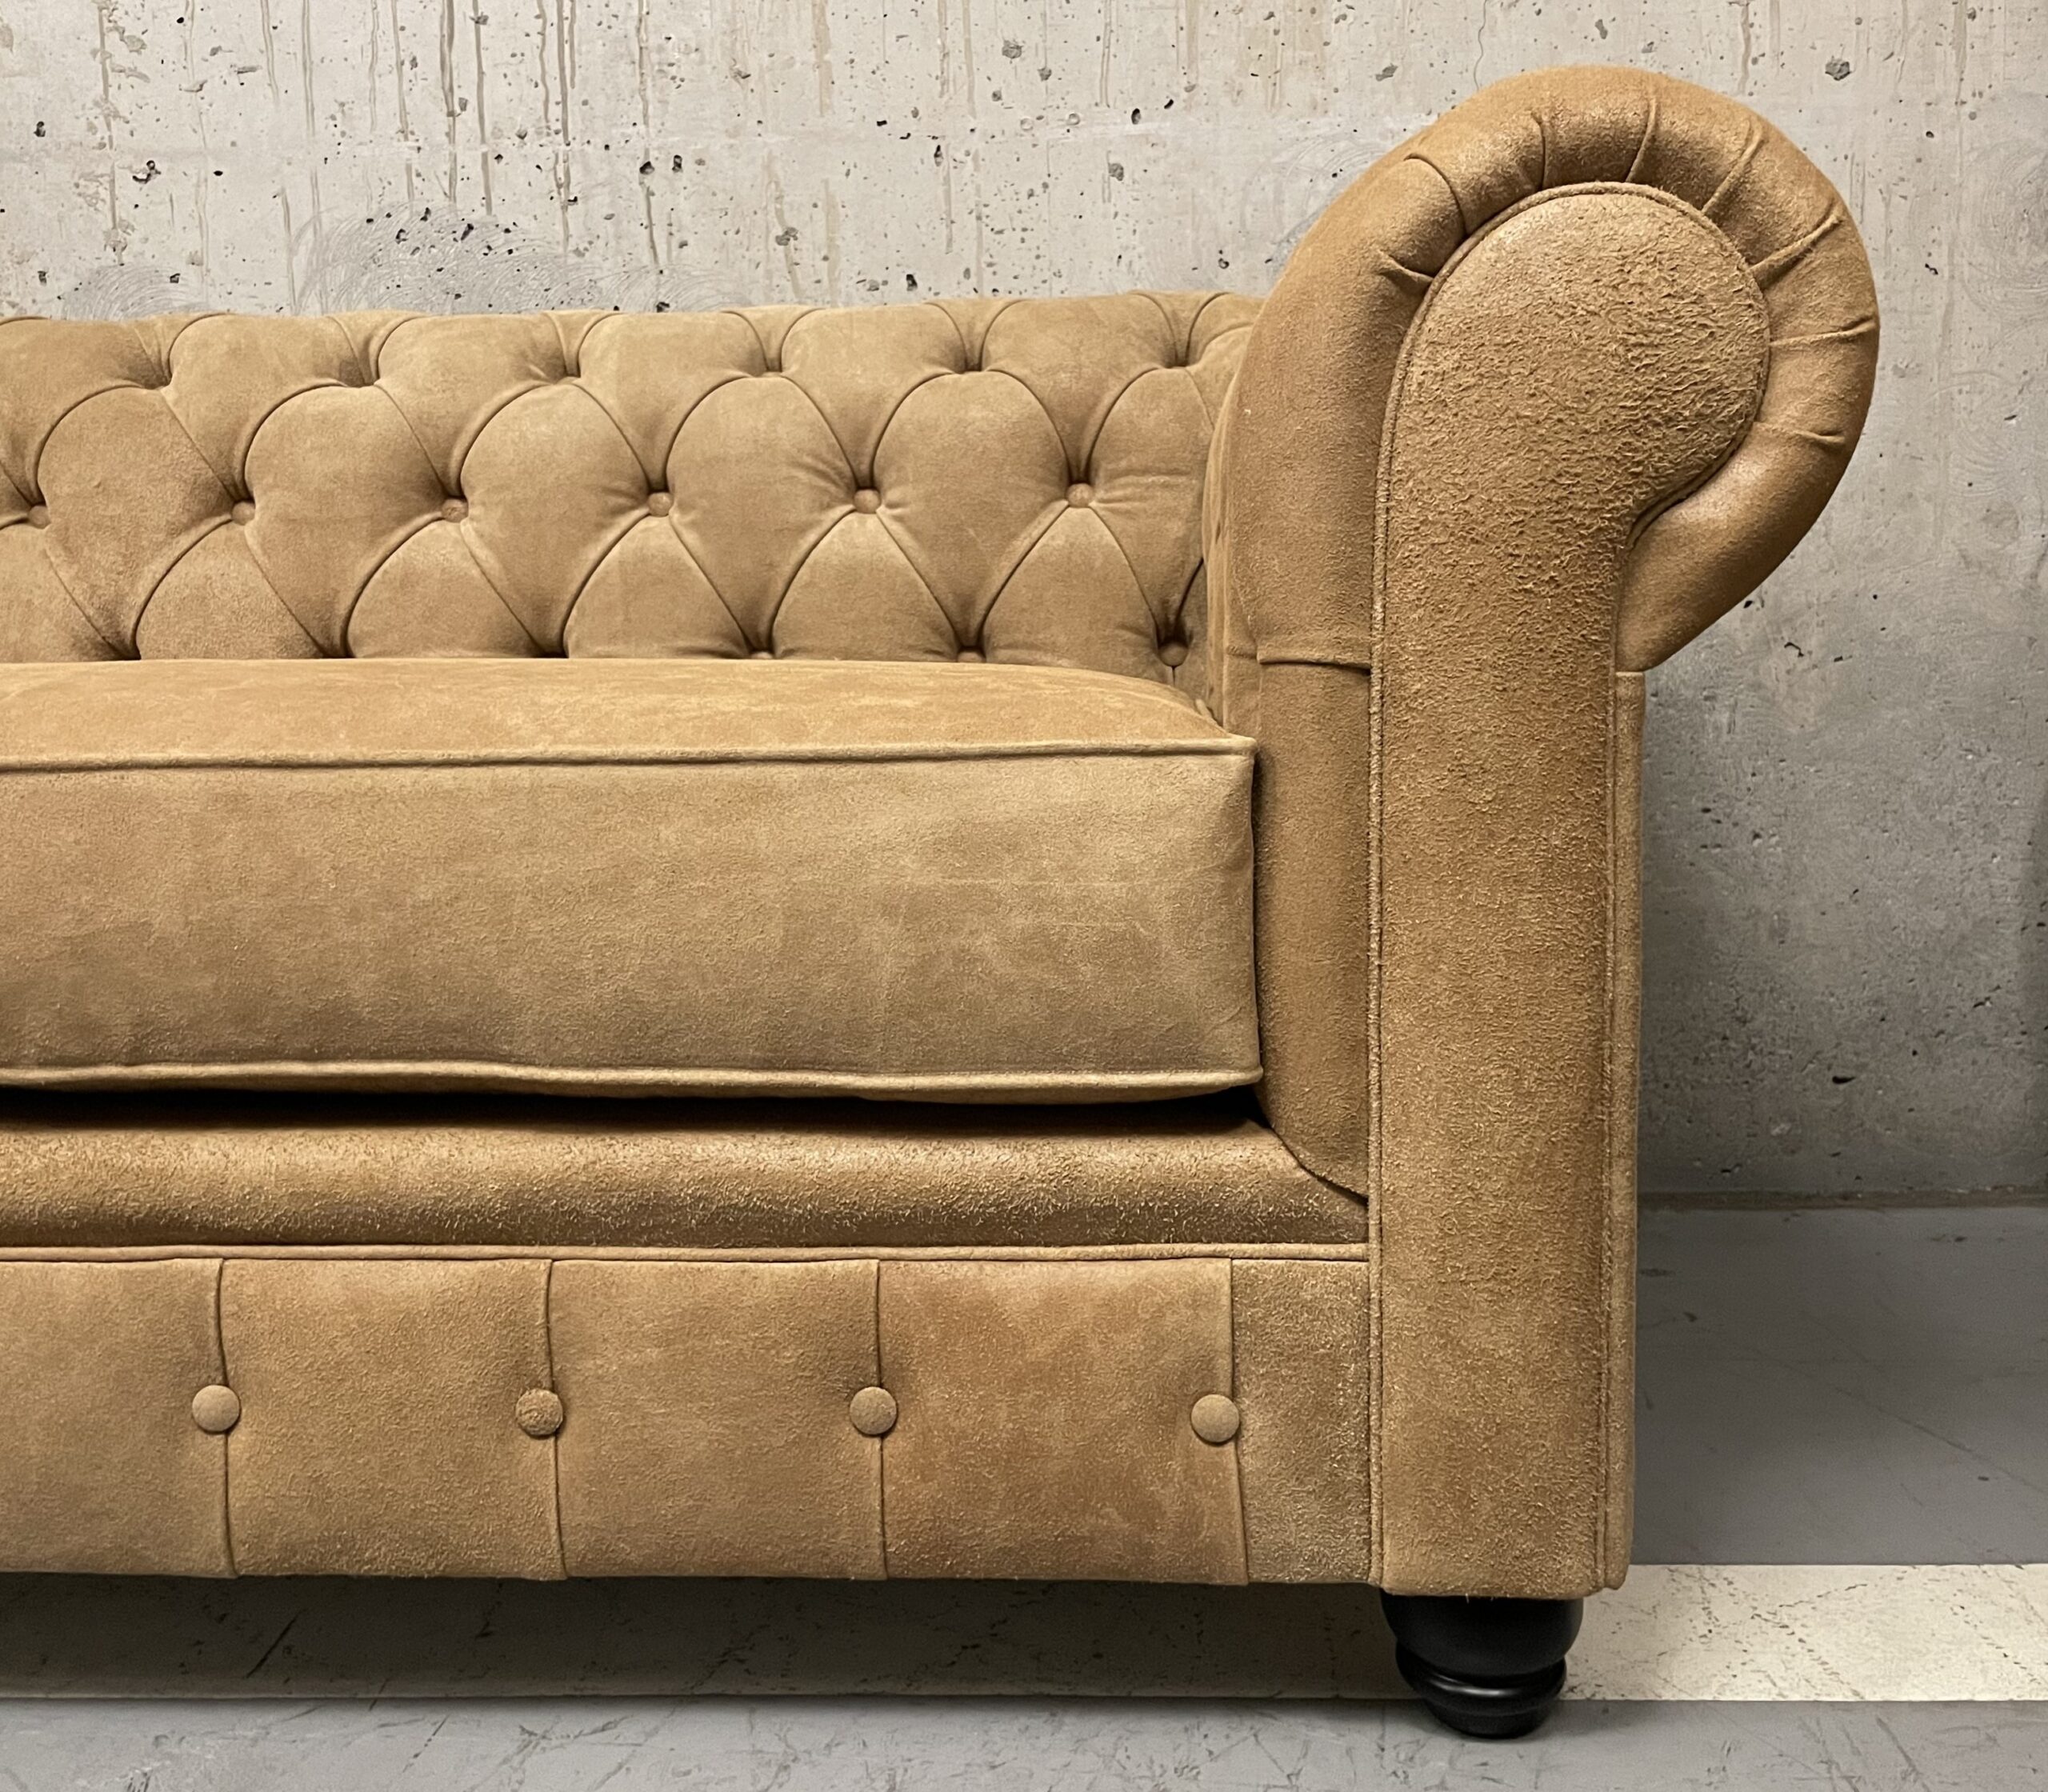 Sofa de Cuero- Chesterfield Color Distroi Oak, 240cm de frente, Cojín único asiento, tres costuras, Respaldo Recto Clásico, Cuero 100% Natural Uruguayo 1